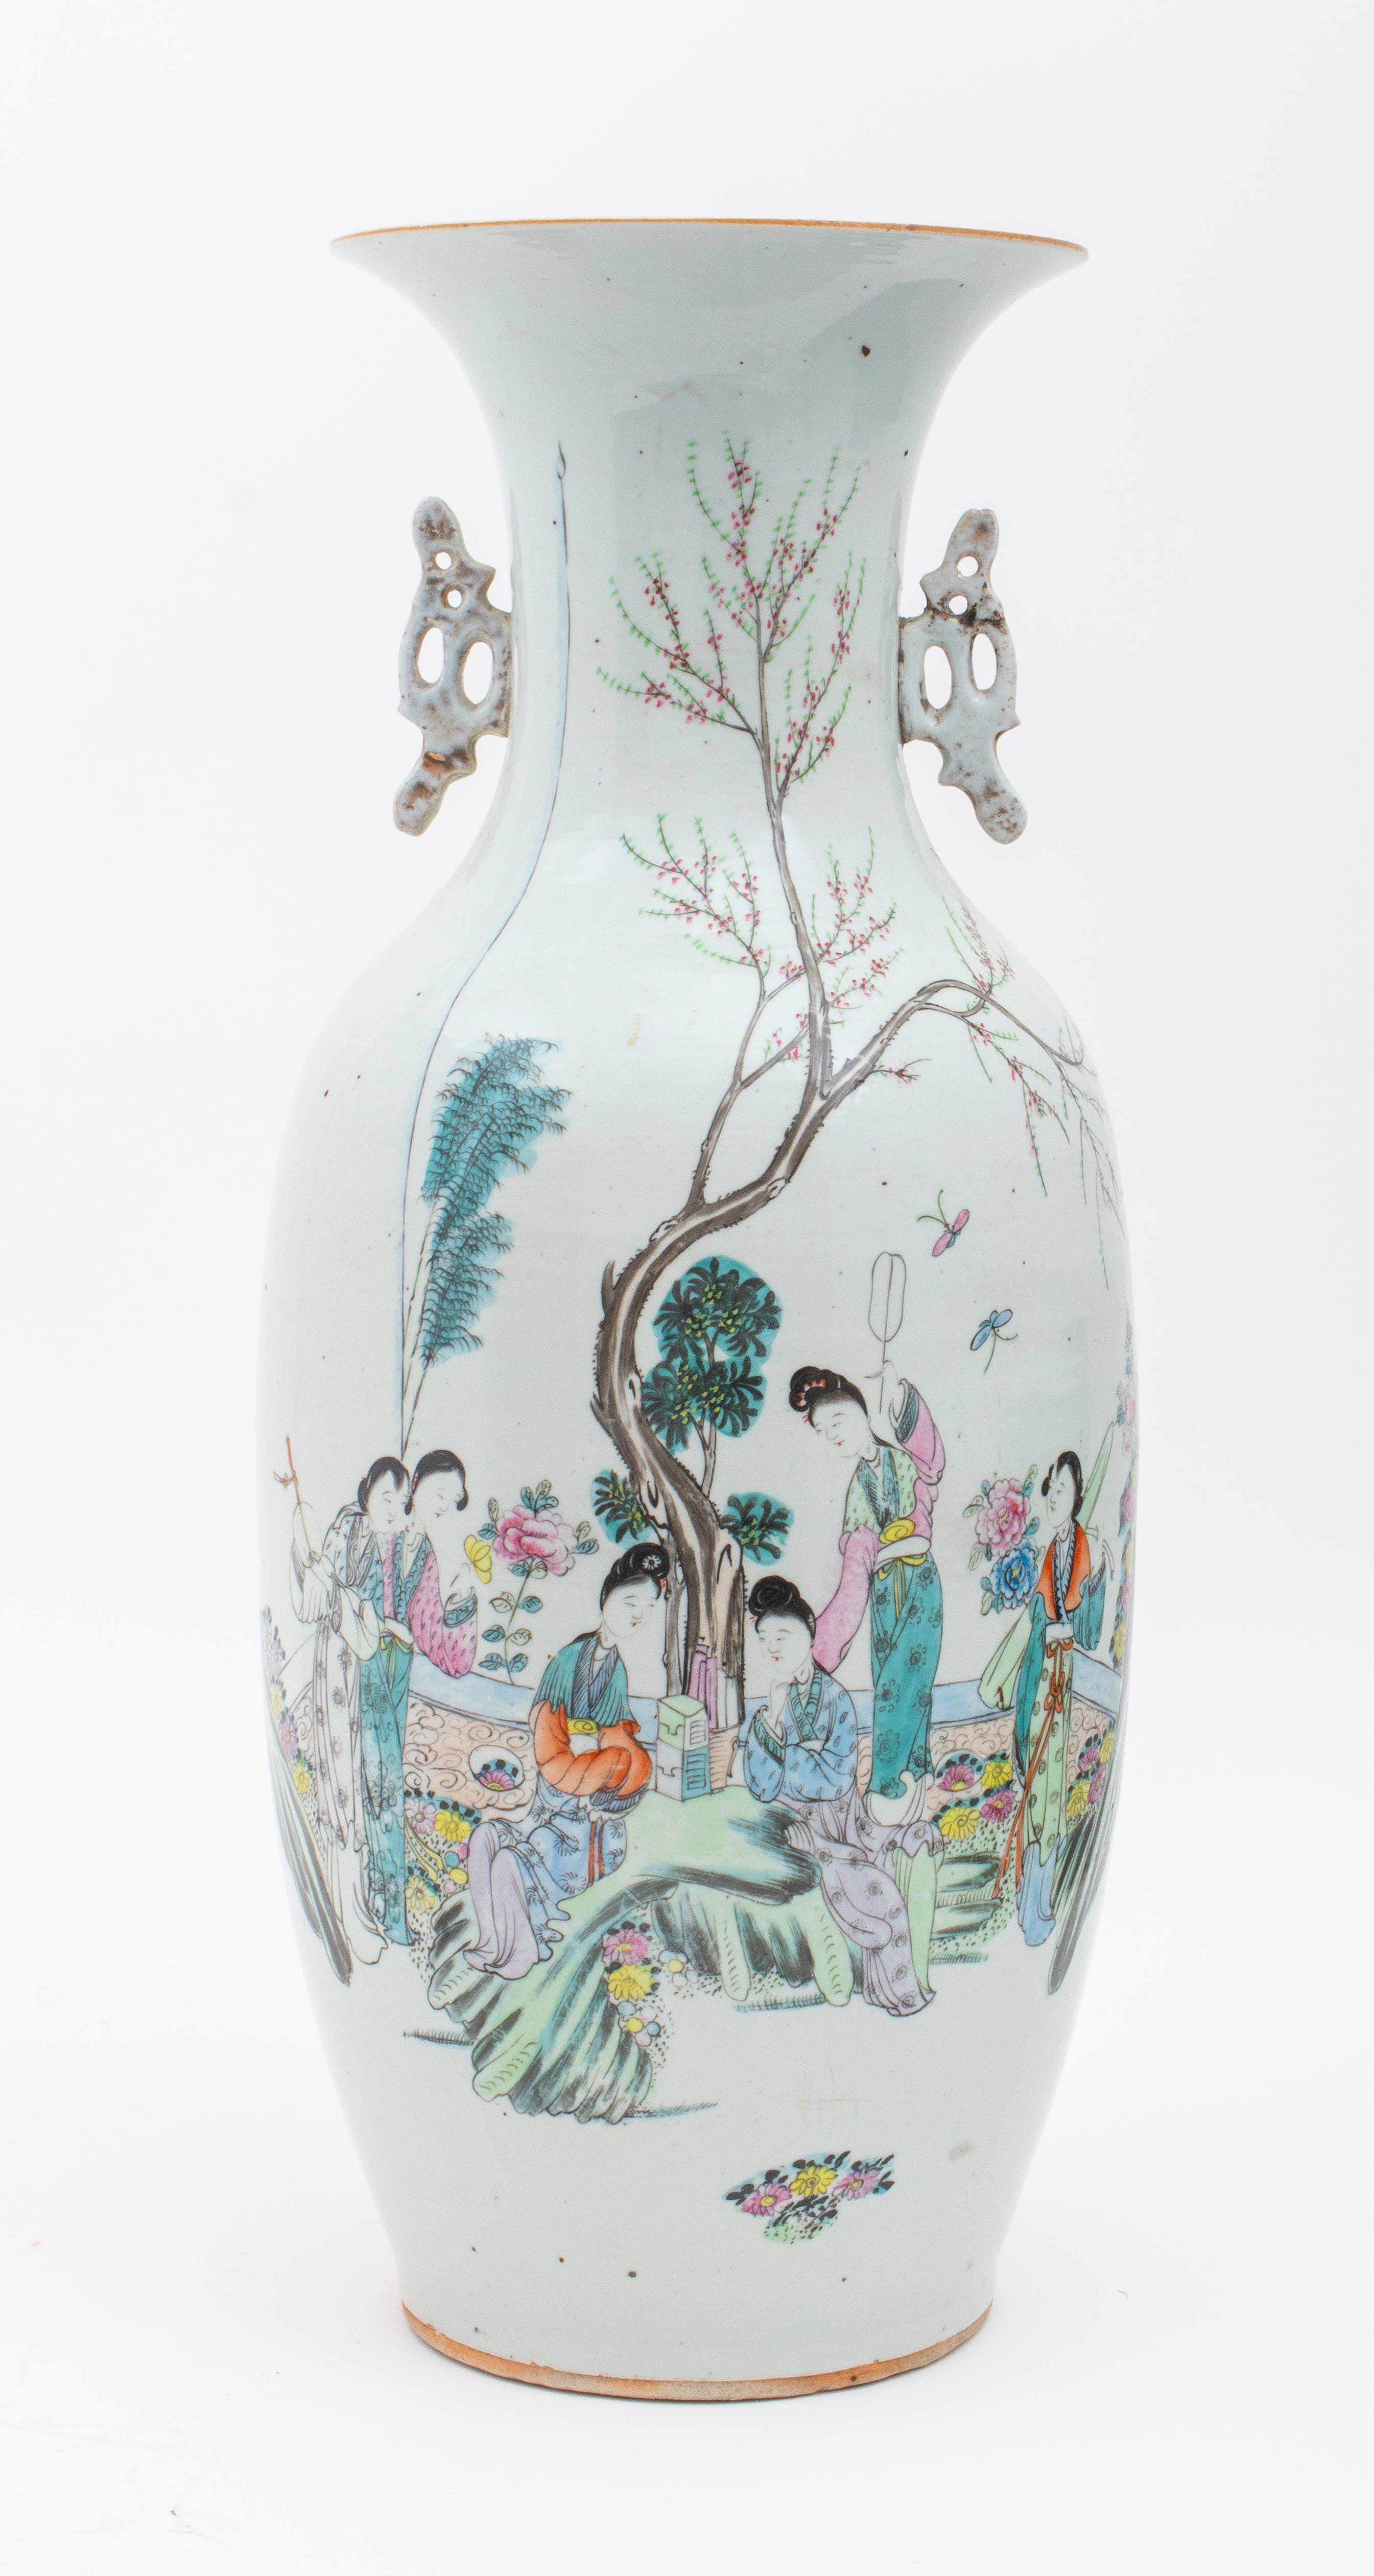 Vase balustre en porcelaine chinoise de la famille rose, représentant un groupe de dames de la cour sous un cerisier en fleurs, avec des caractères chinois au verso, non marqué. Dimensions : 22,75